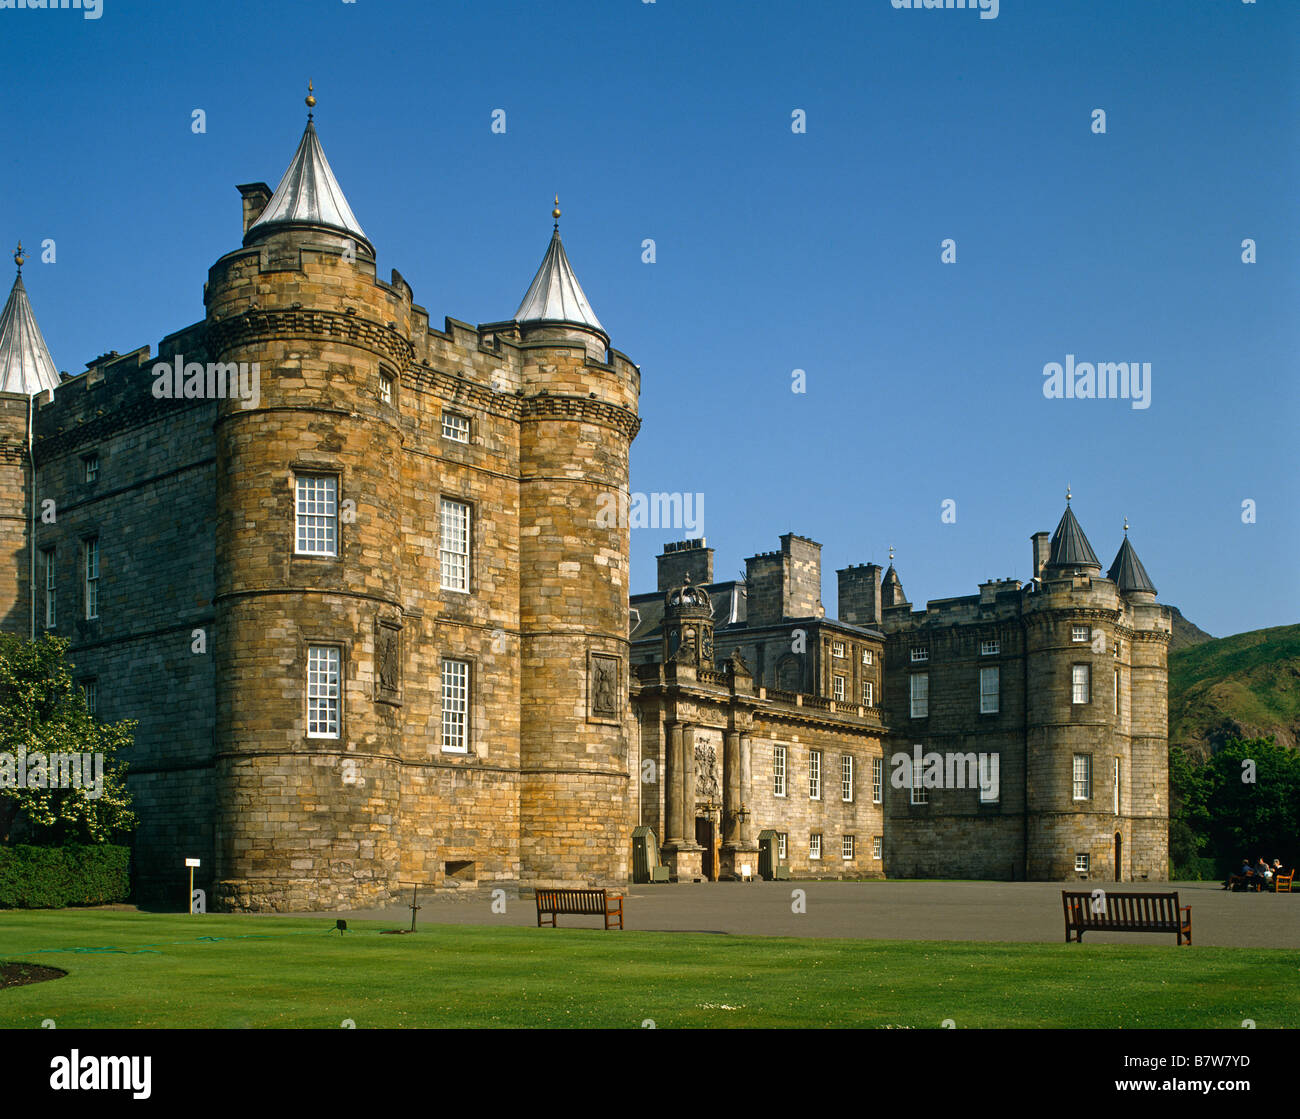 Holyrood House Edinburgh Scotland UK Stock Photo